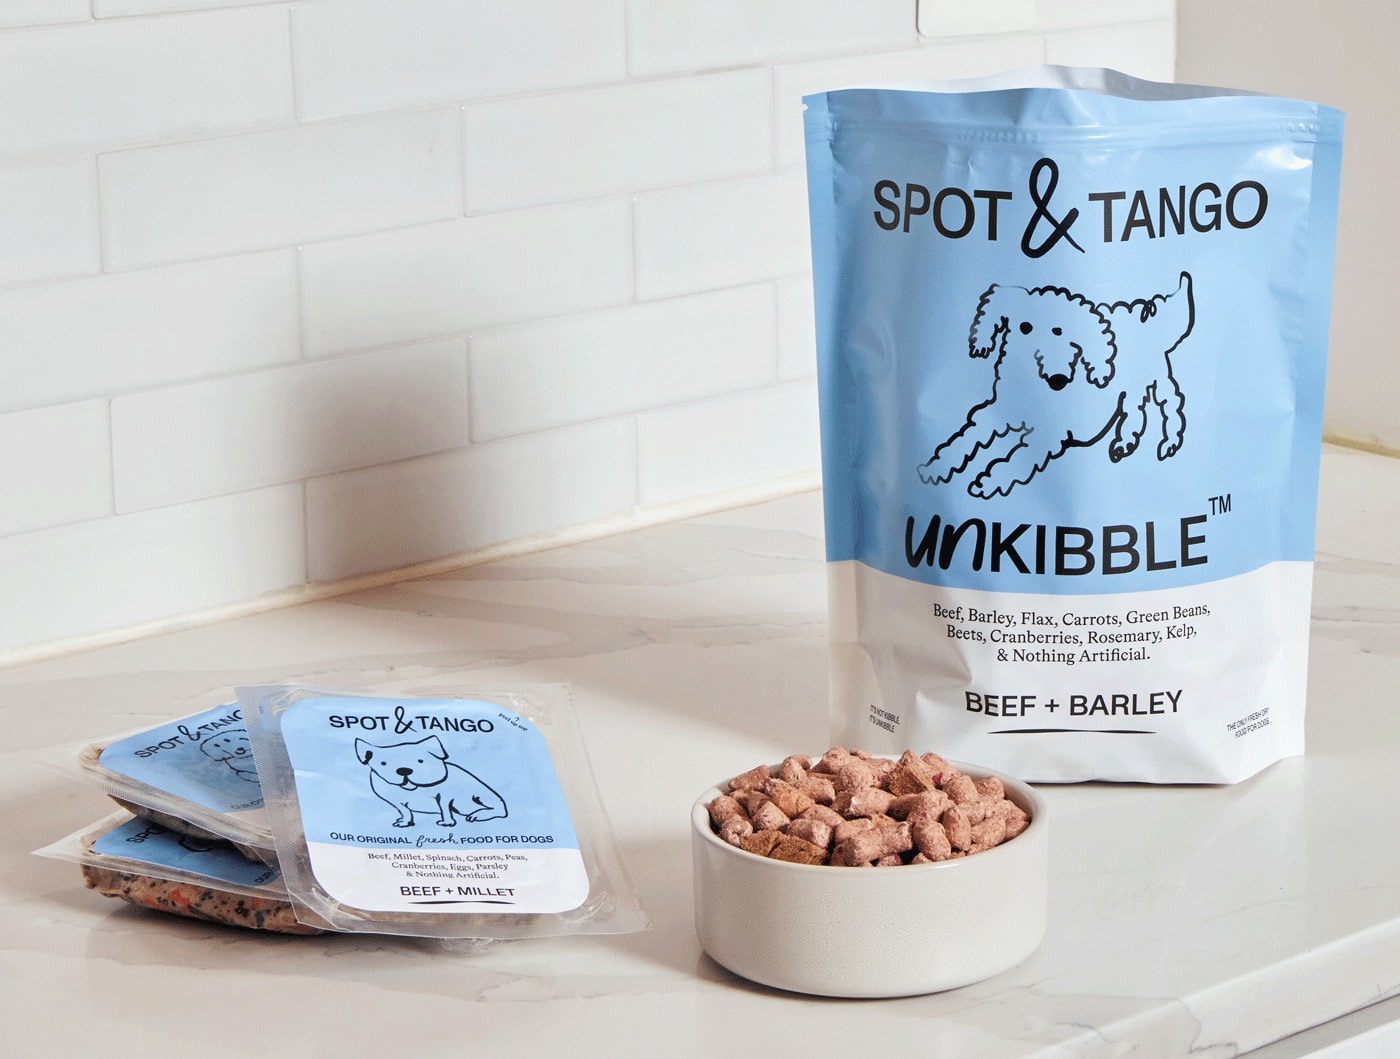 Spot & Tango Unkibble product line